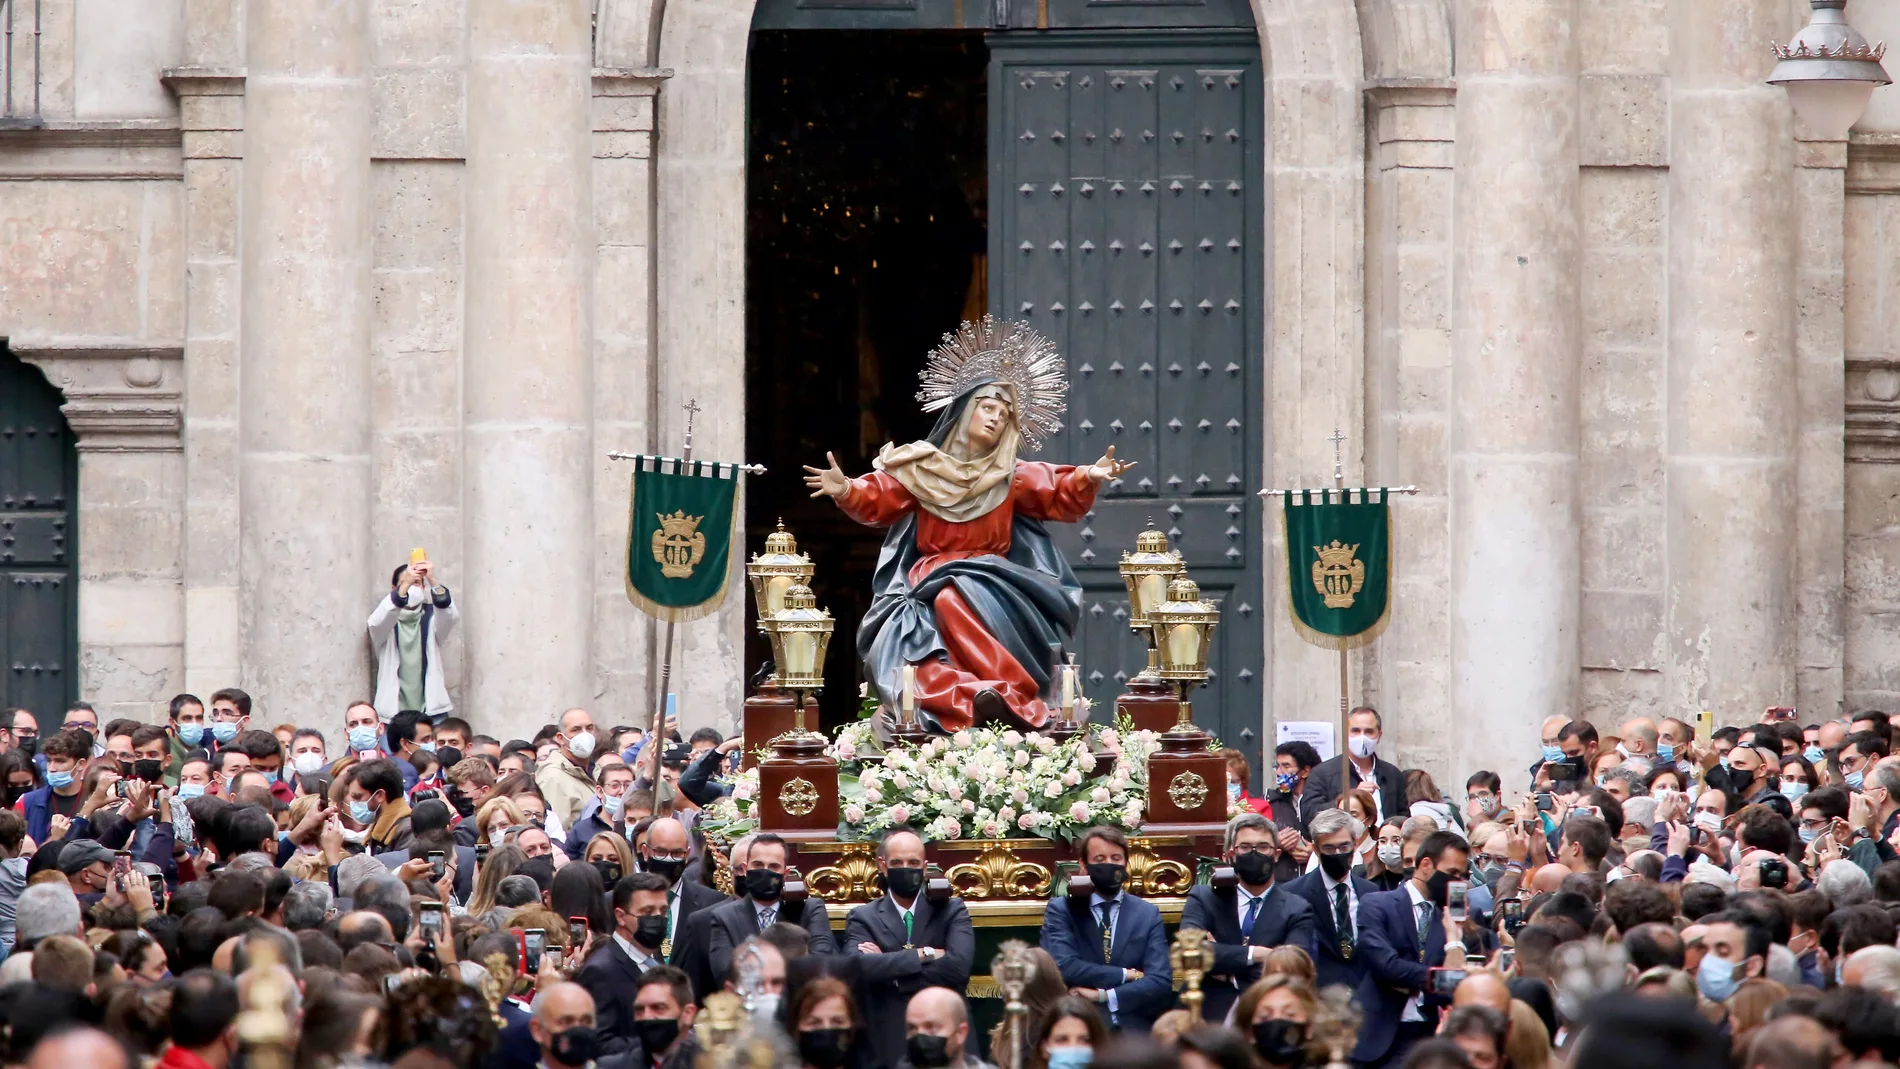 Salida de la procesión con la Virgen de los Dolores en andas por los hermanos desde la Iglesia Penitencial de la Santa Vera Cruz de Valladolid durante el VIII Encuentro Nacional de Jóvenes de Hermandades y Cofradías